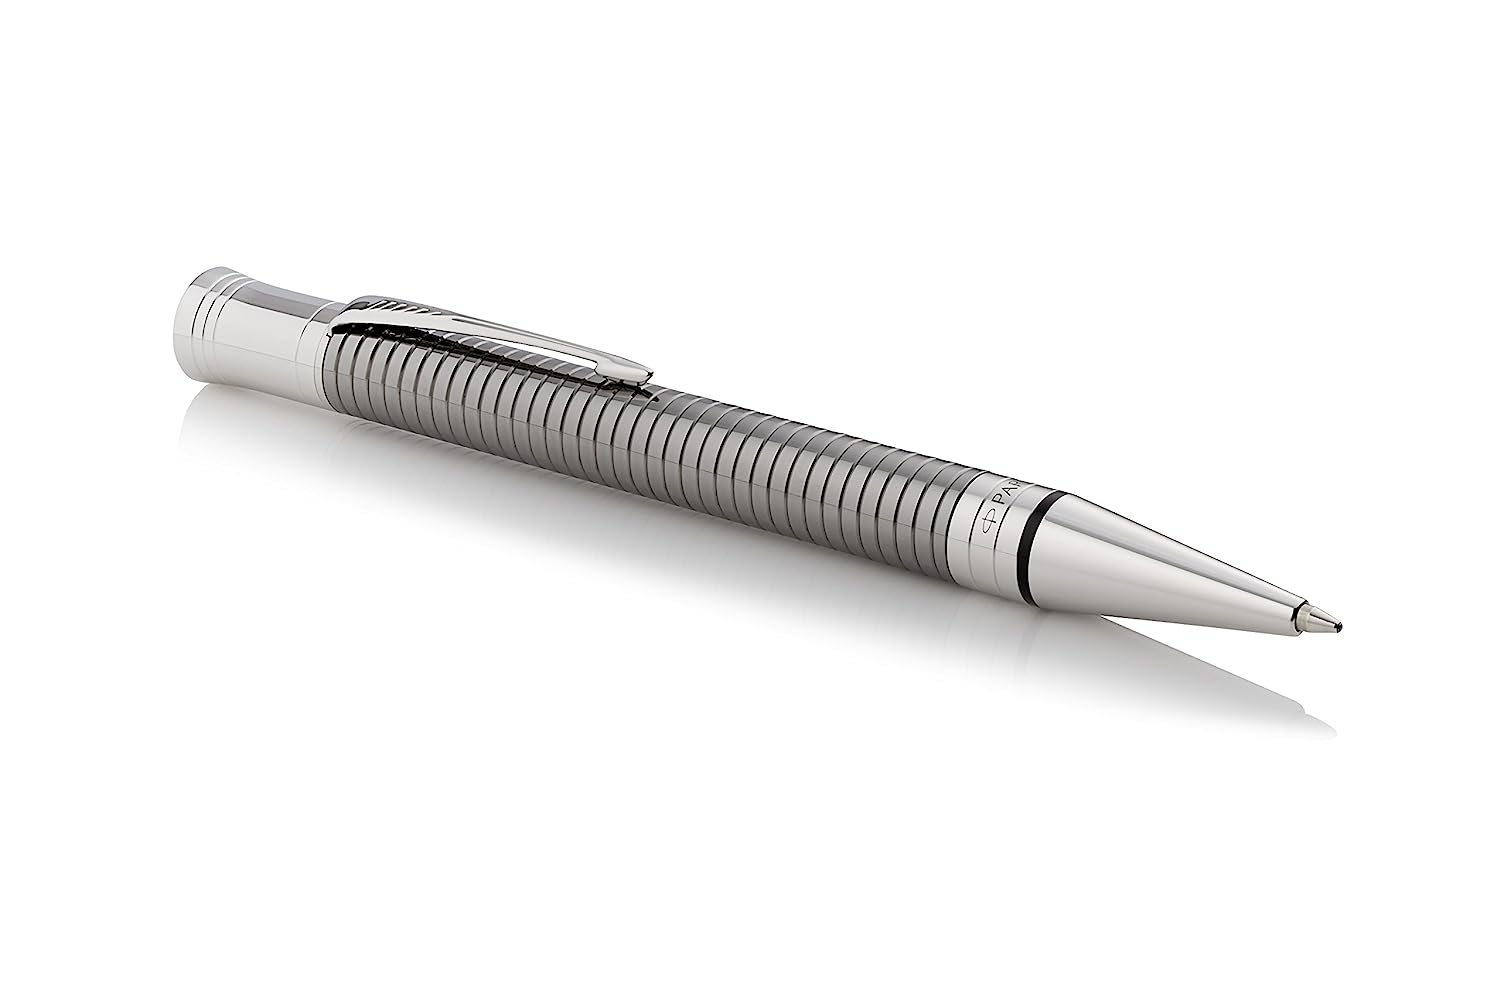 PARKER Duofold Ballpoint Pen, Prestige Ruthenium Chiselled Ballpoint Pen